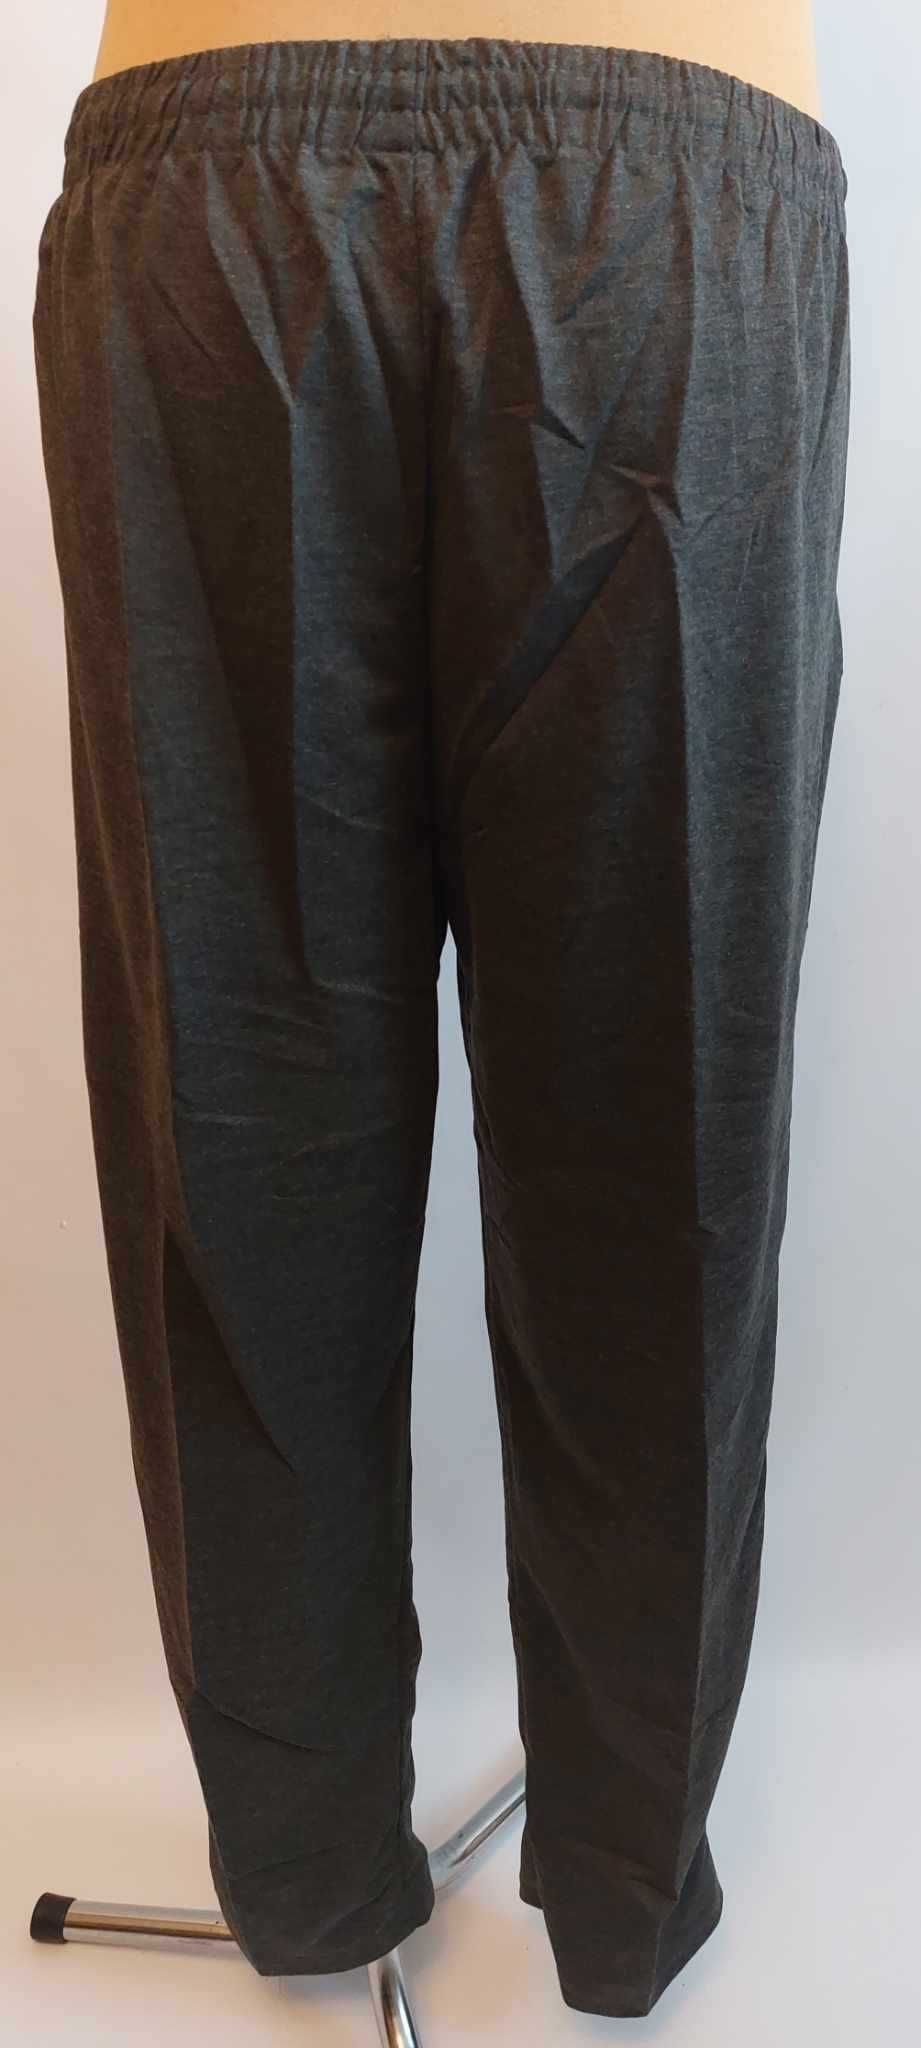 Spodnie męskie dresowe grafit bez ściągaczy LINTEBOB Y-47169-LK r 5 XL